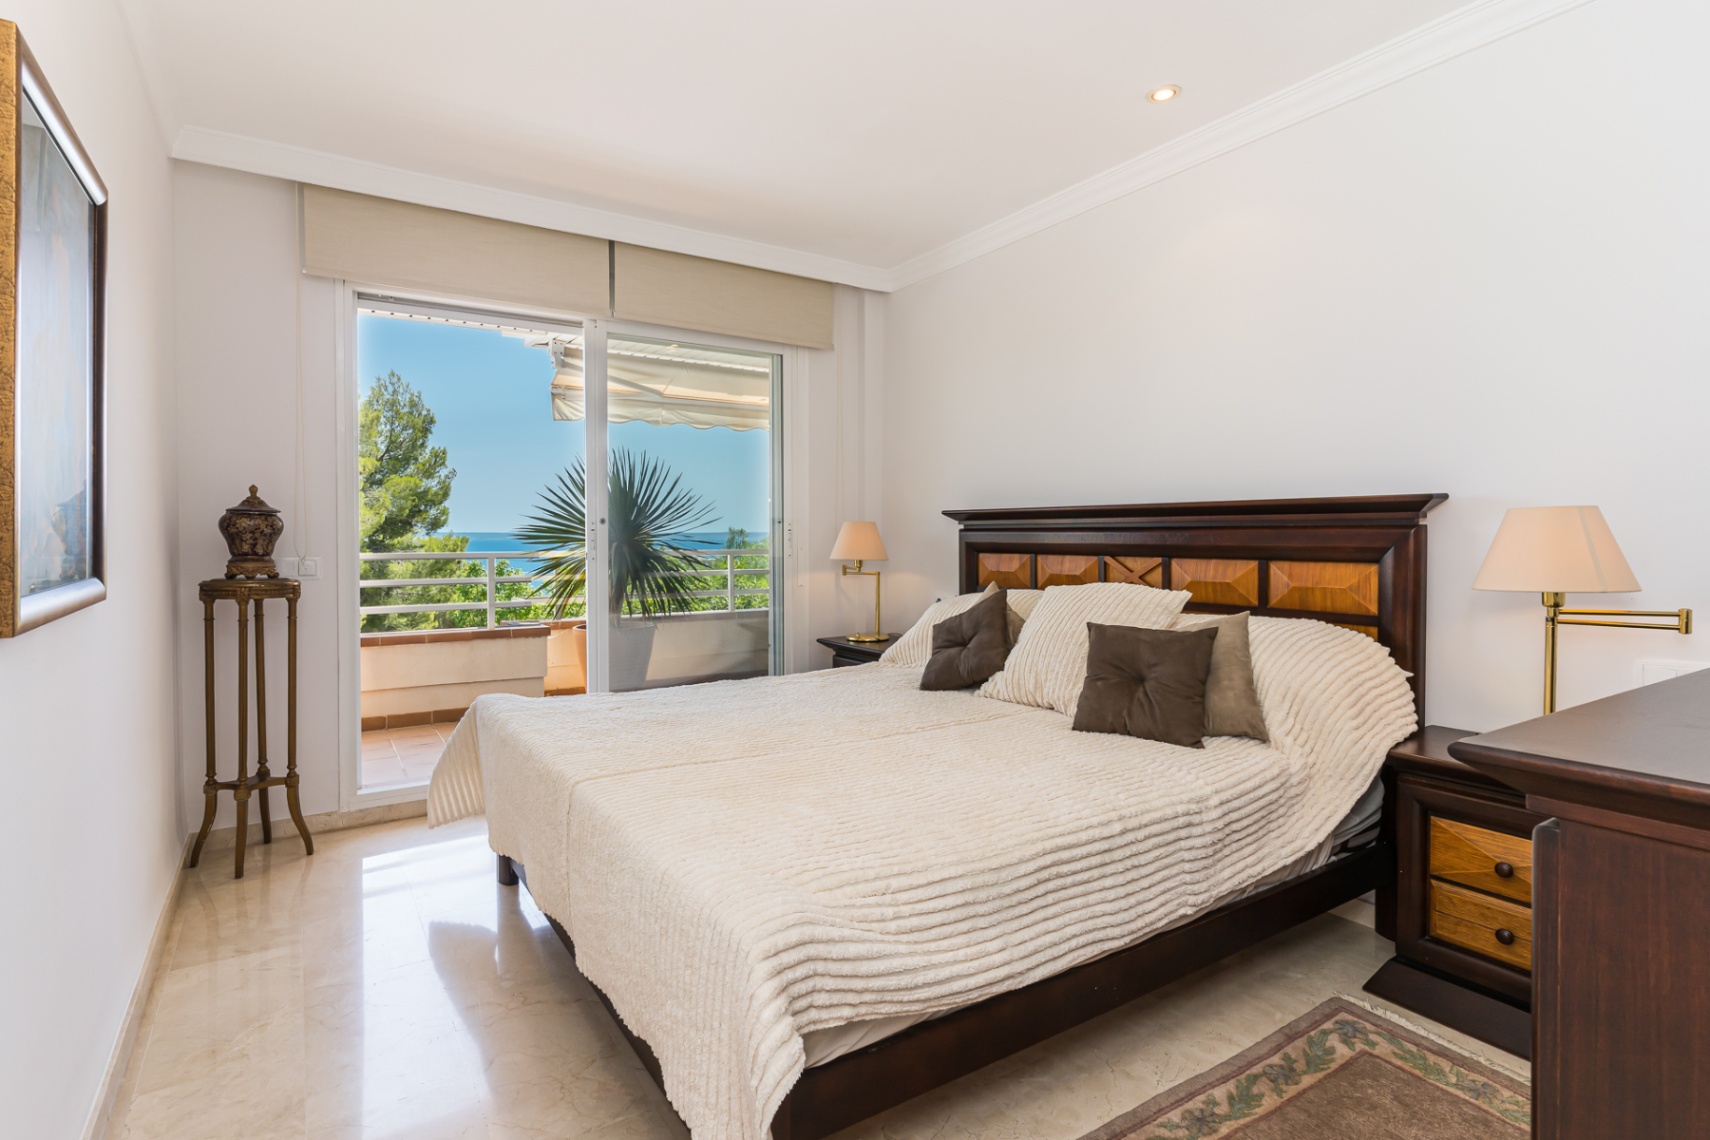 Sapcious appartement met zeezicht in een rustige omgeving van Cas Catala